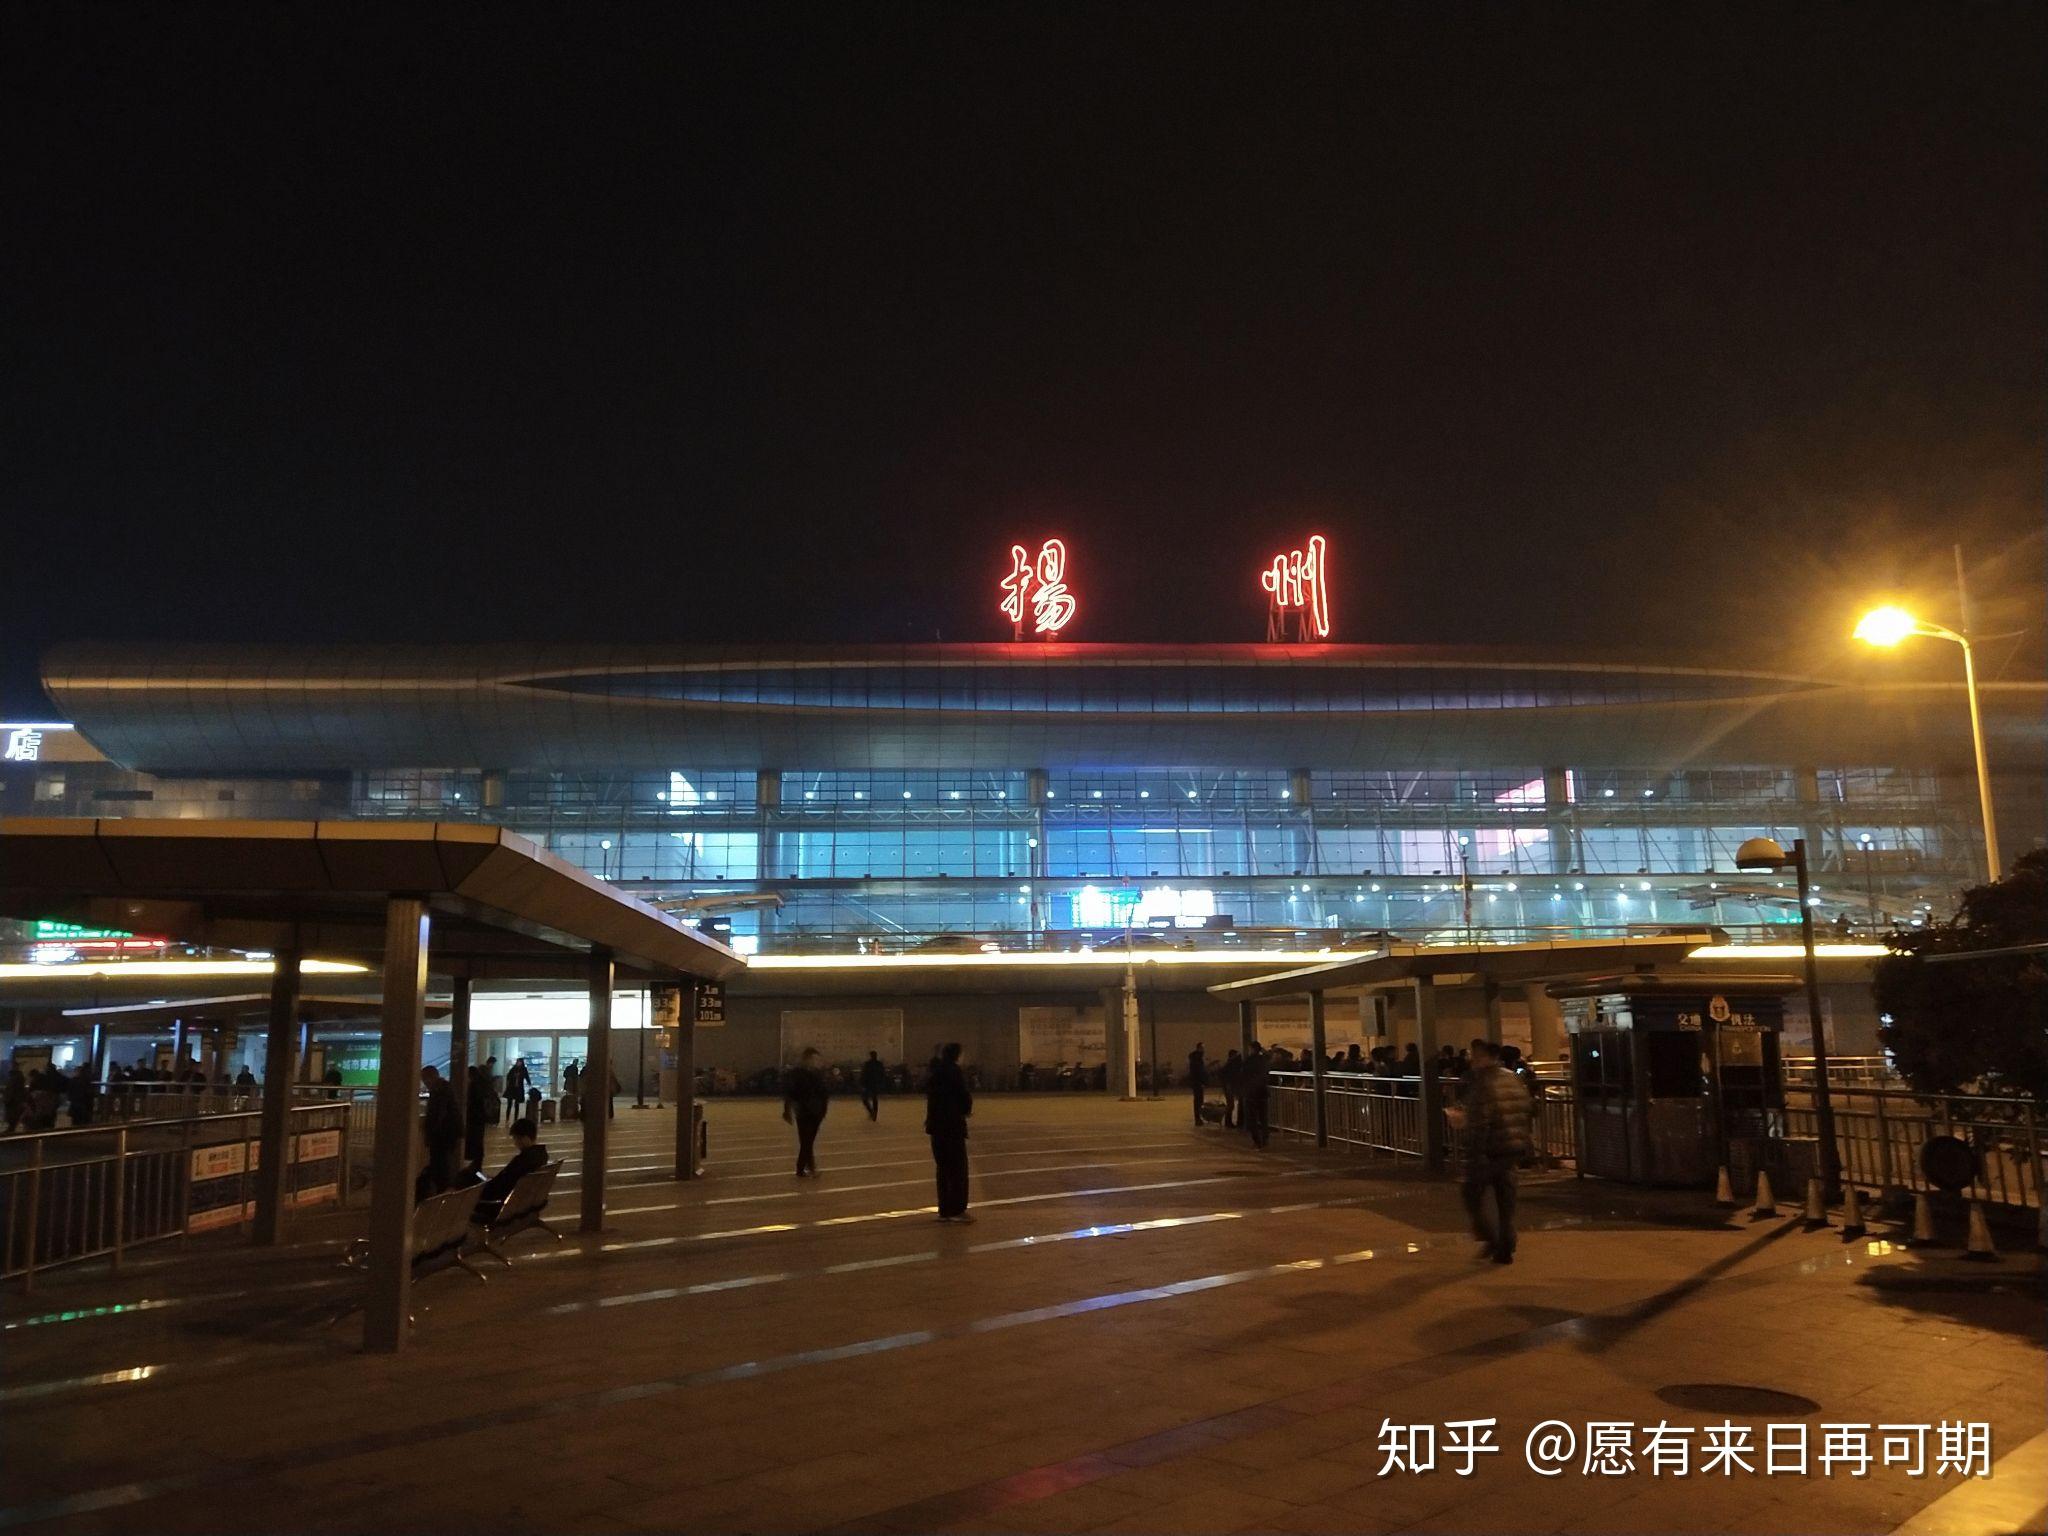 扬州站夜景滁州北站外景滁州北站候车显示屏k93次列车水牌扬州站版权